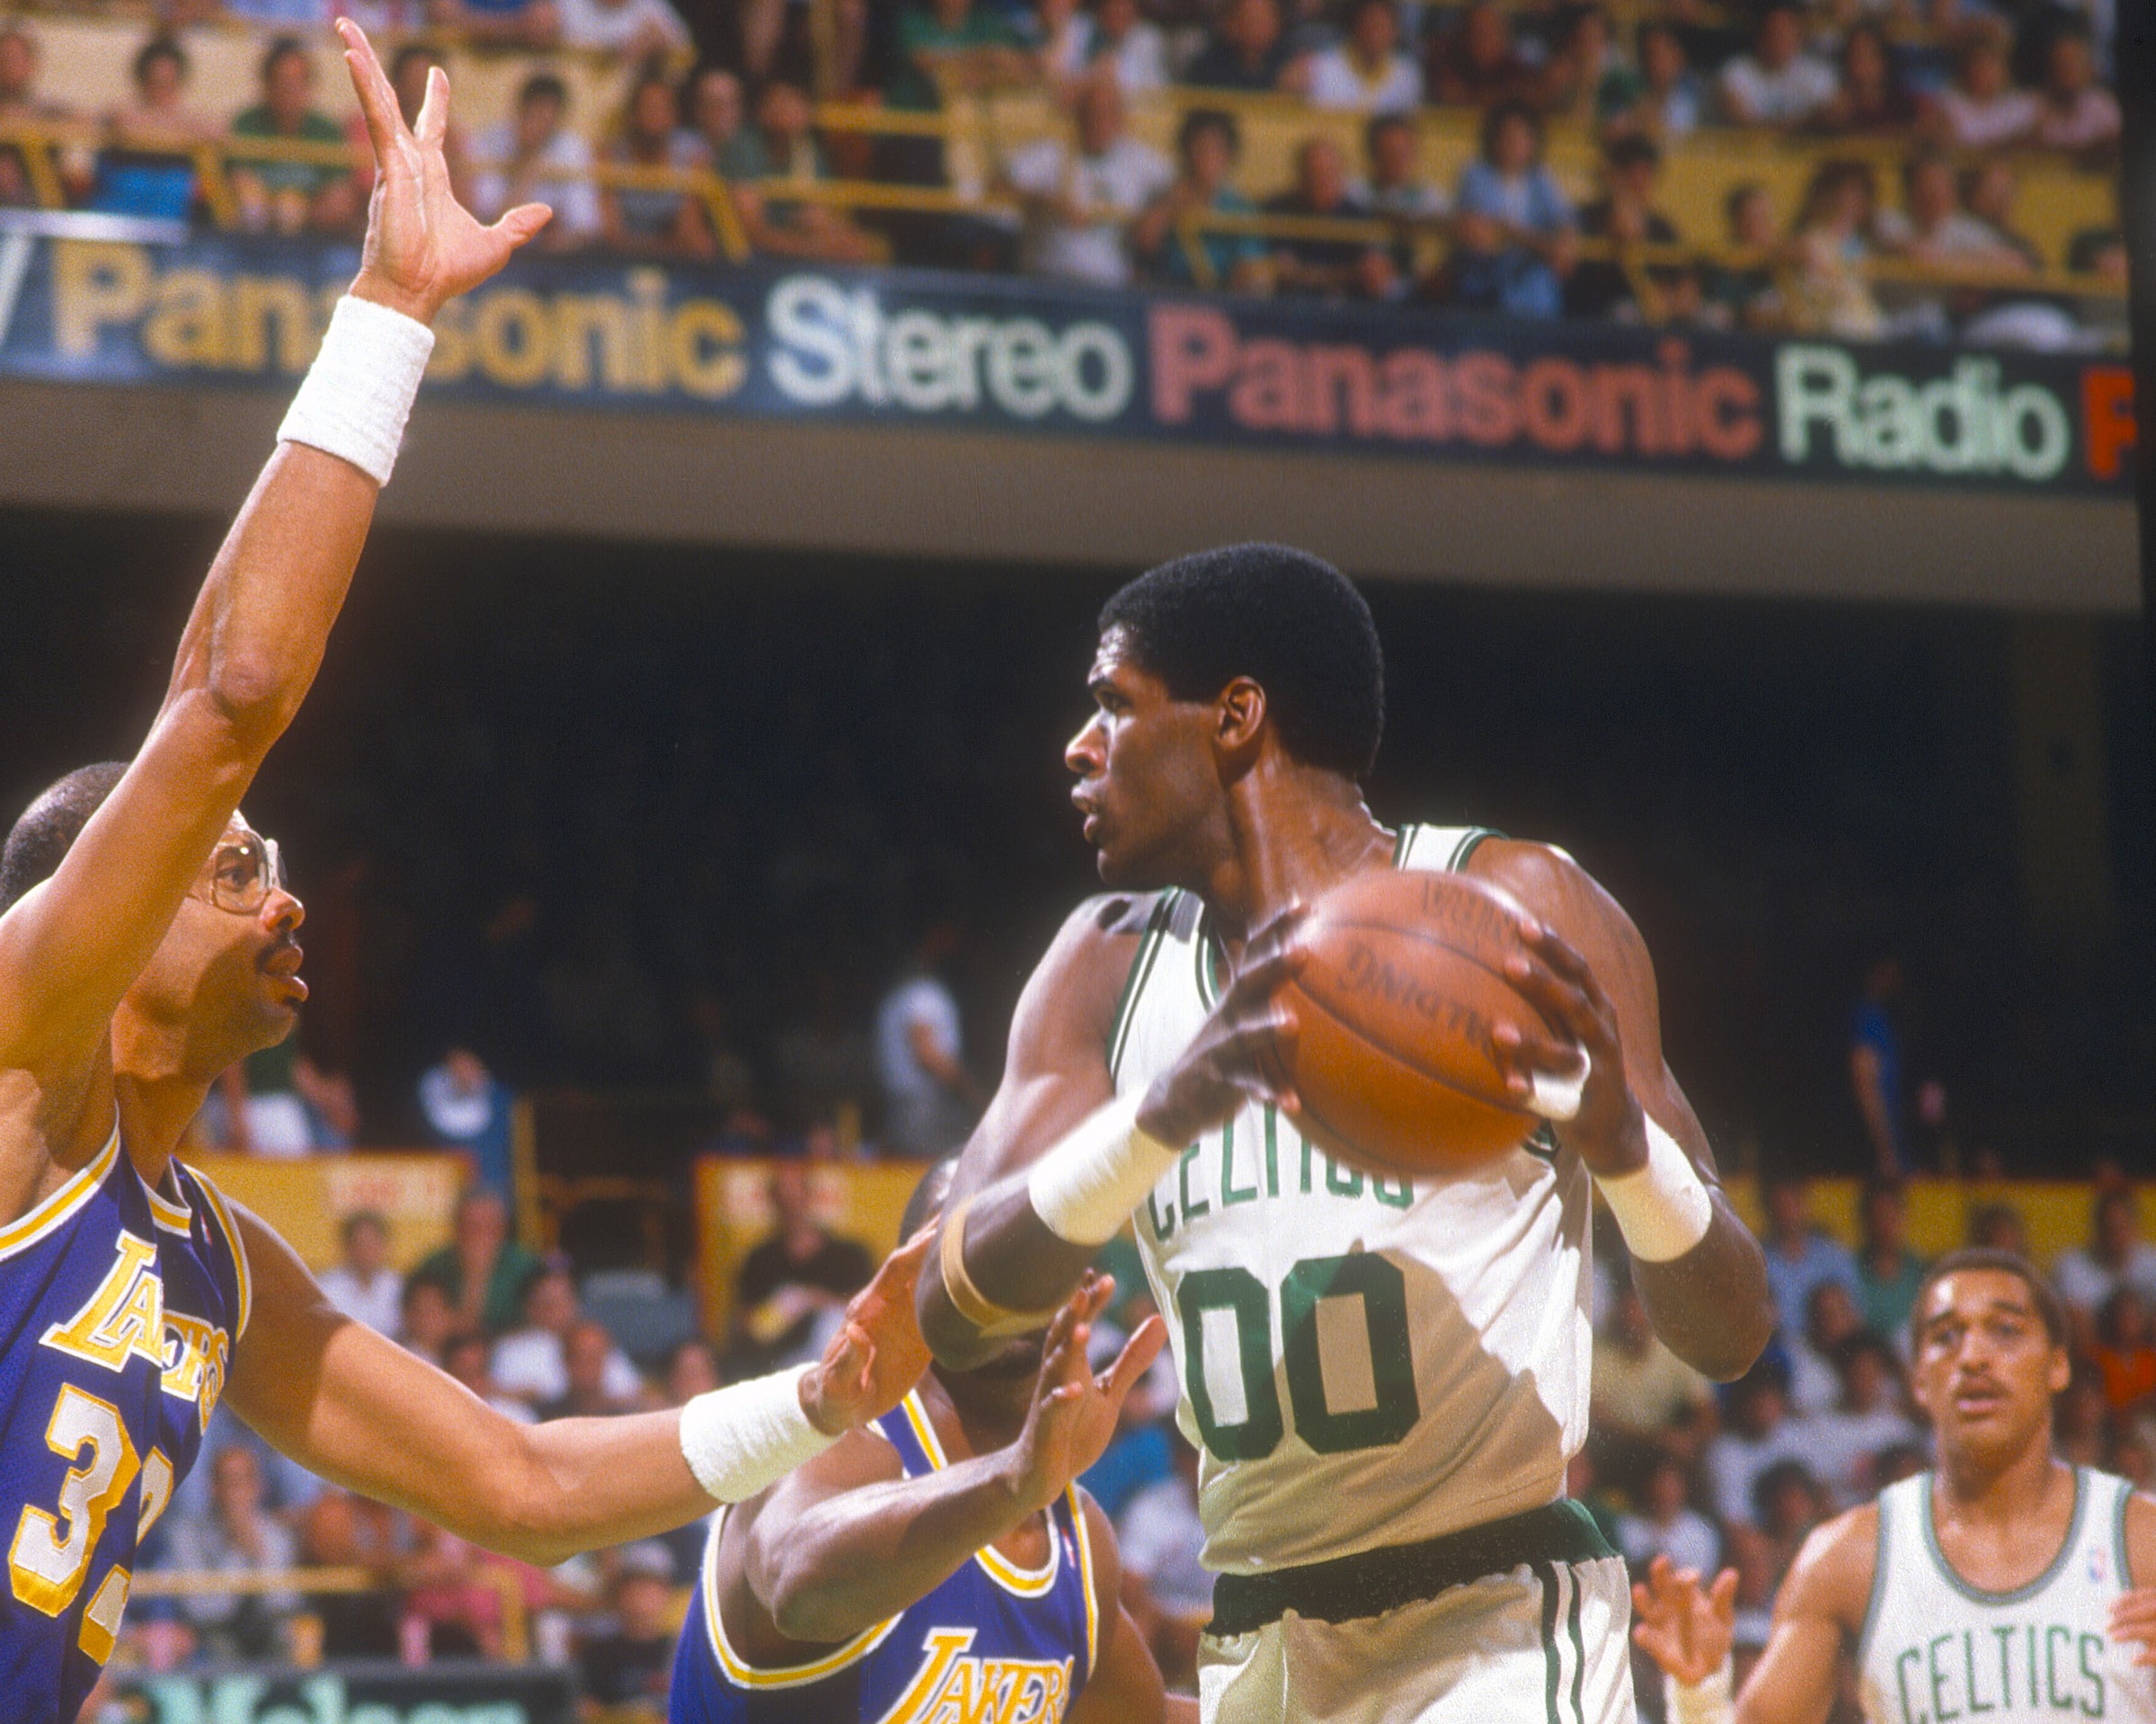 Robert Parish chose a winner between the 1986 Celtics and 1997